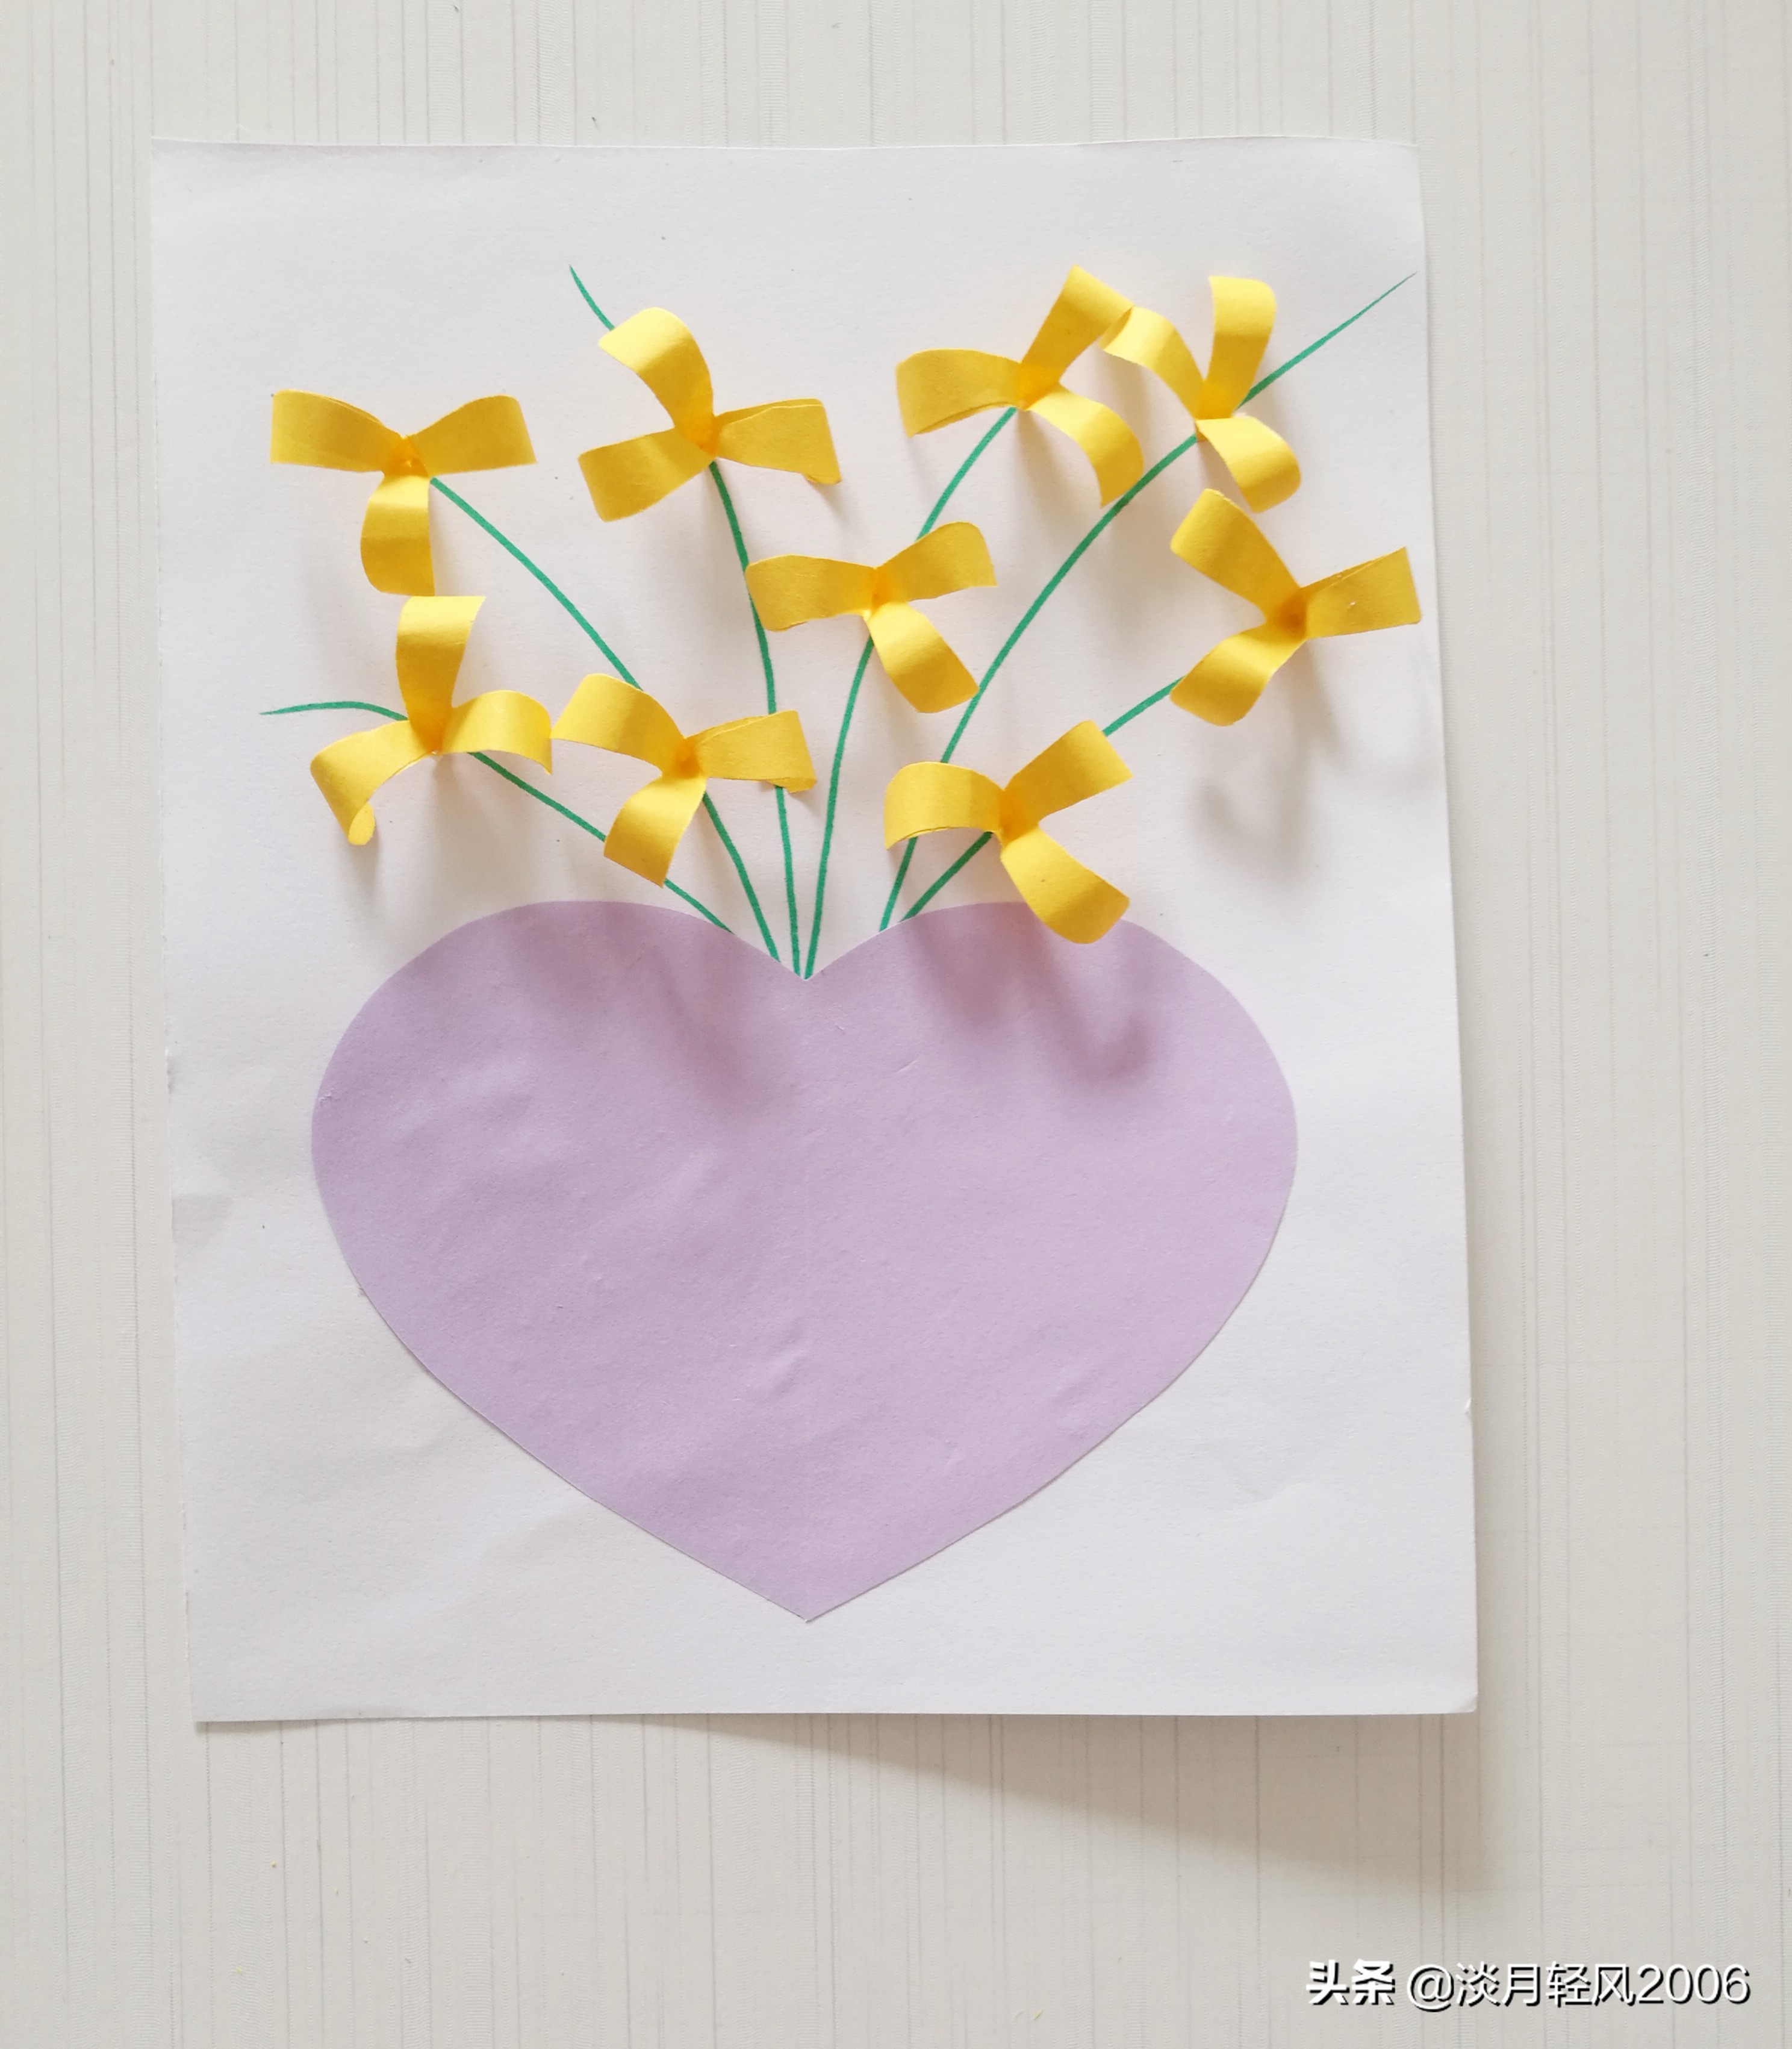 幼儿园的贺卡怎么做幼儿园手工自己动手用卡纸做清新小花爱心贺卡可以